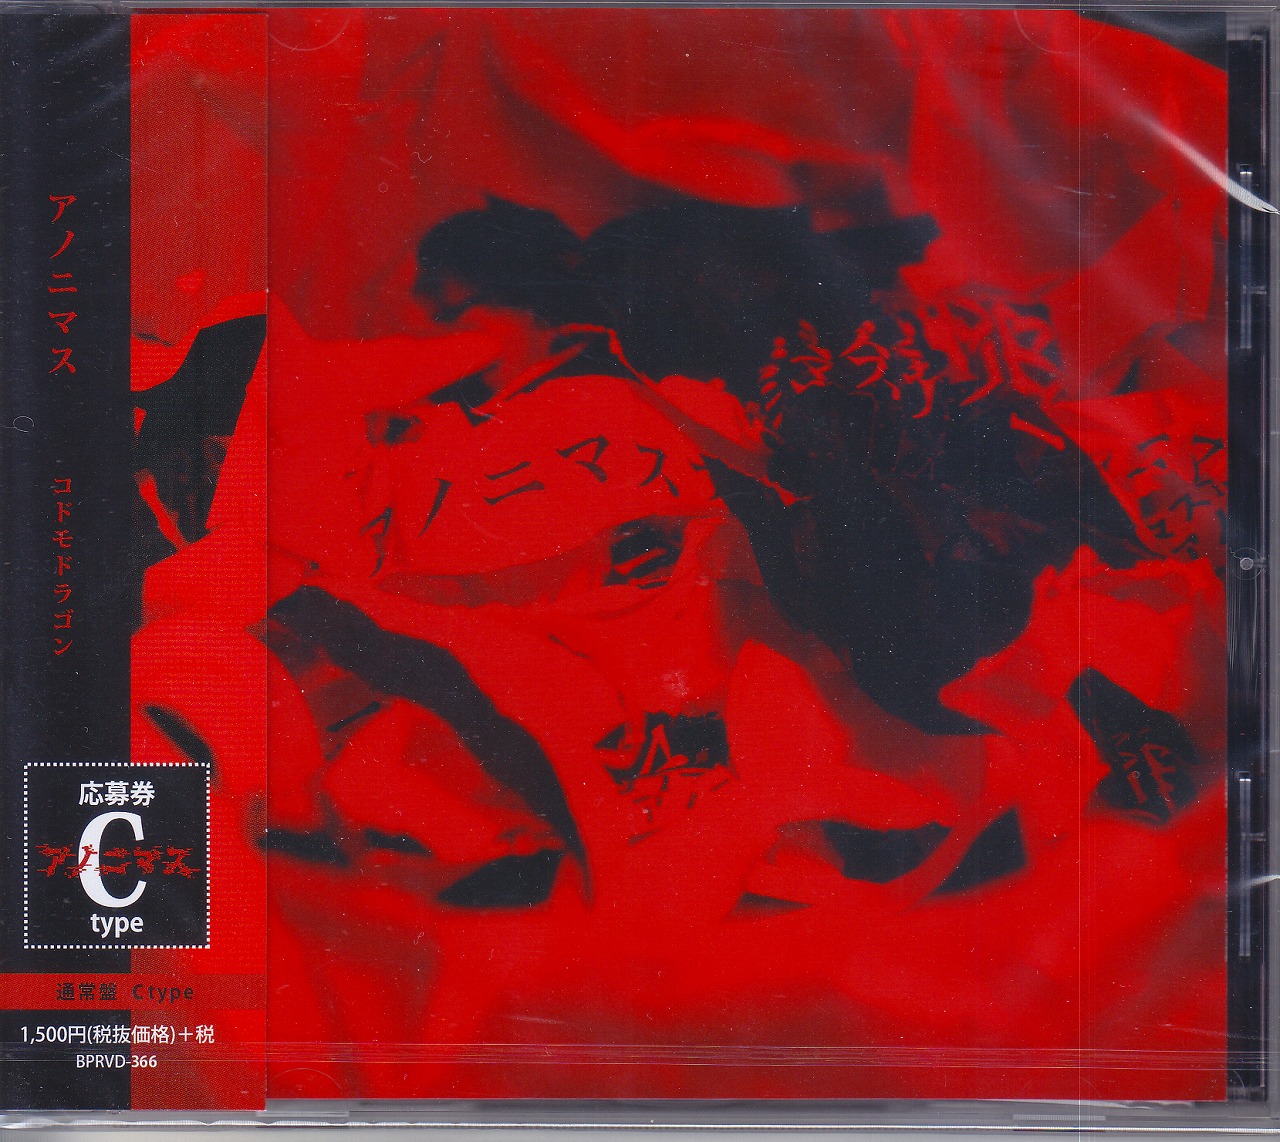 コドモドラゴン の CD 【Ctype】アノニマス